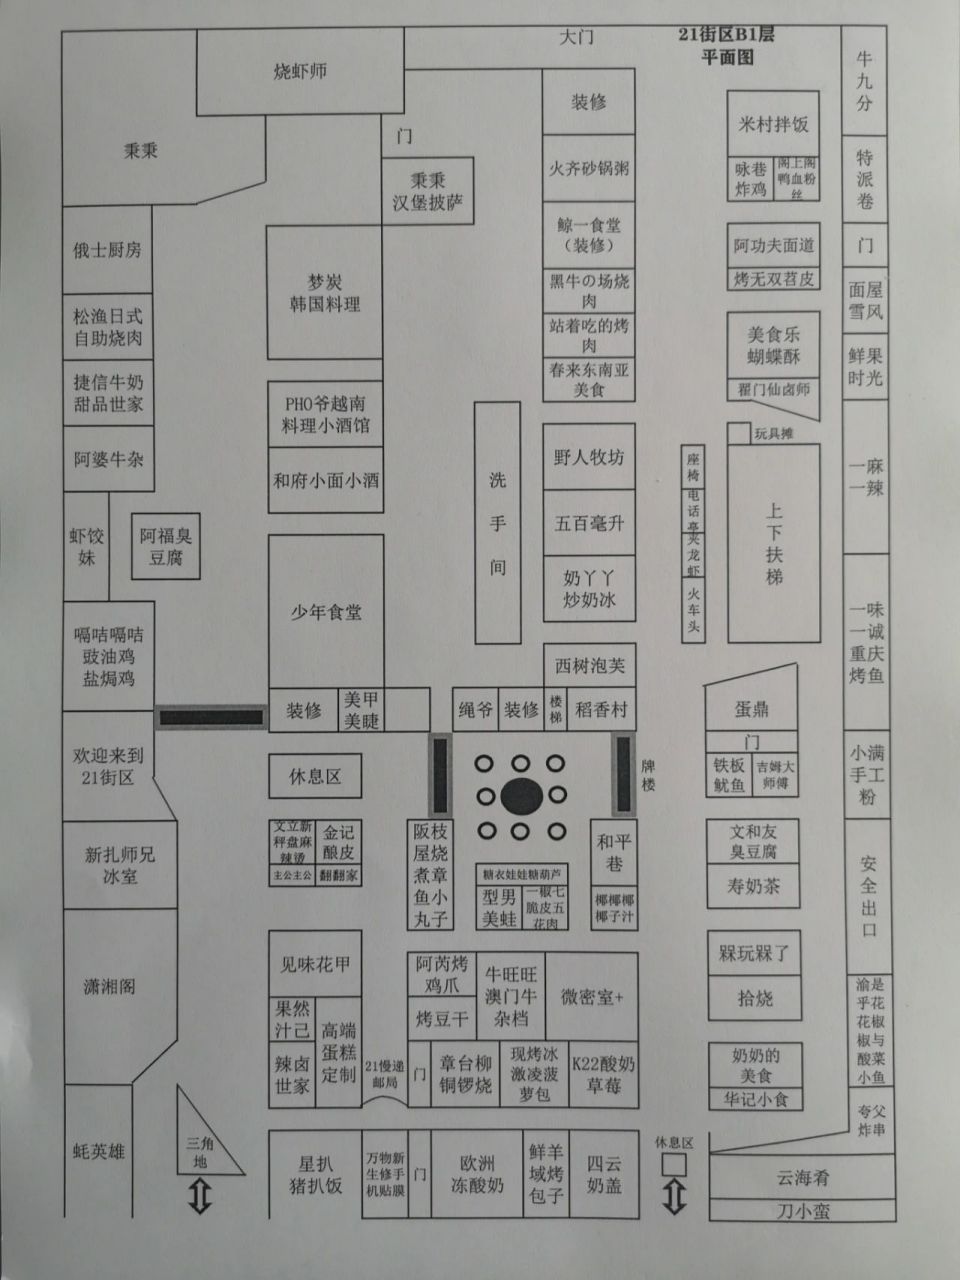 北京合生汇21街区平面图(原创) 合生汇是我最喜欢的商场之一了,21街区